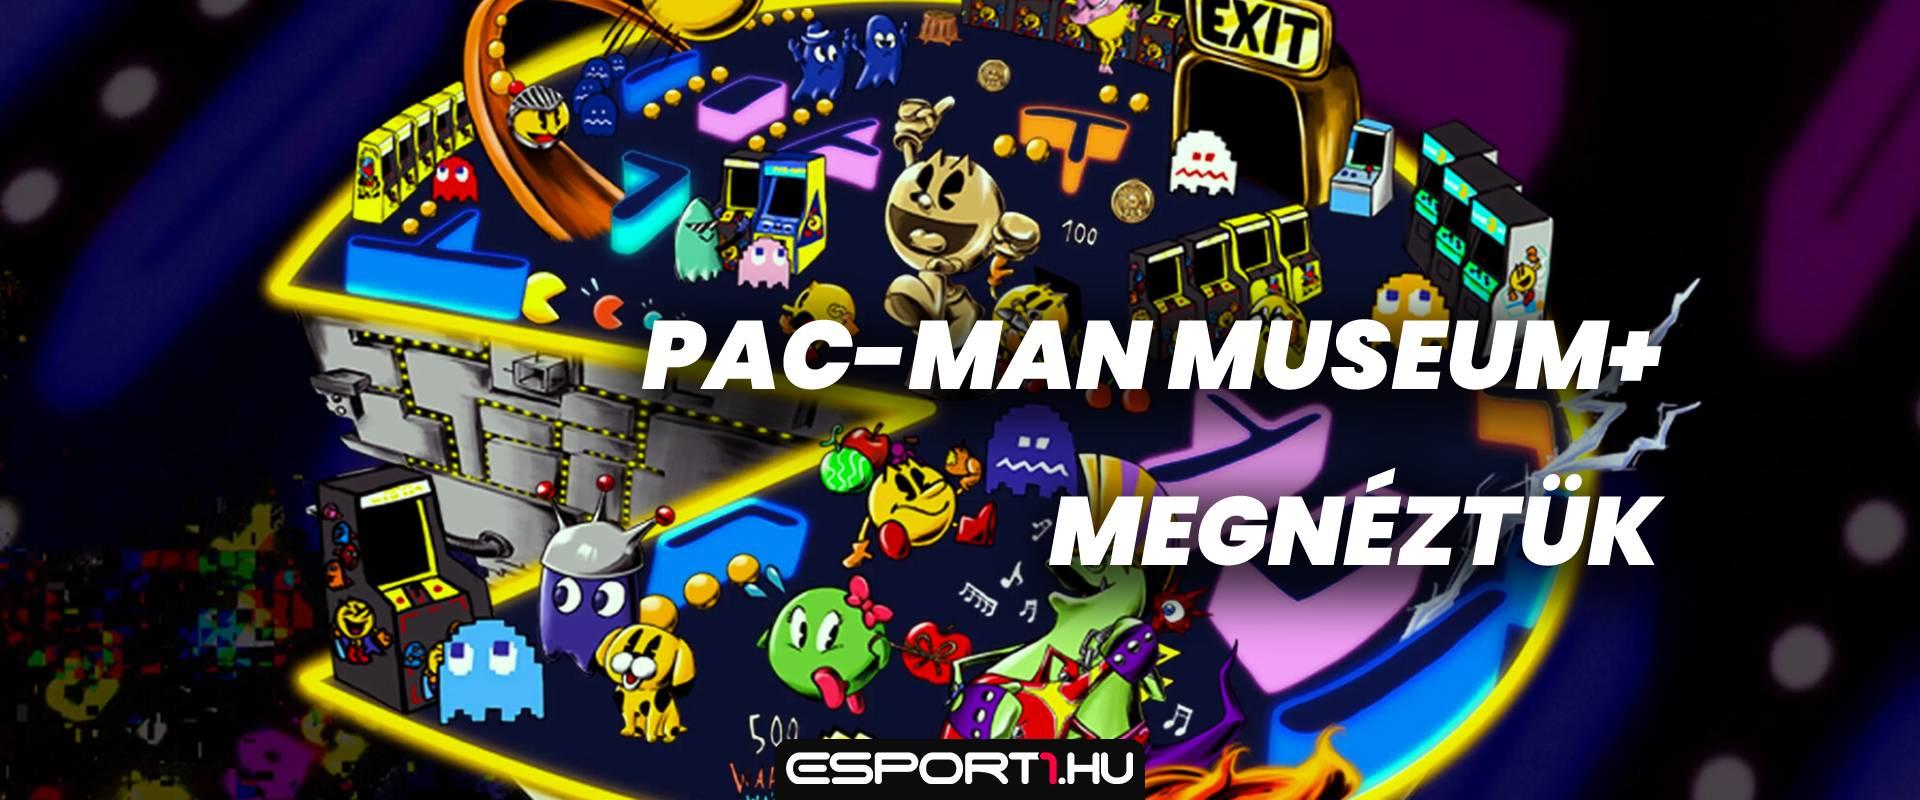 Pac-Man Museum+: Legendás játékok újracsomagolva